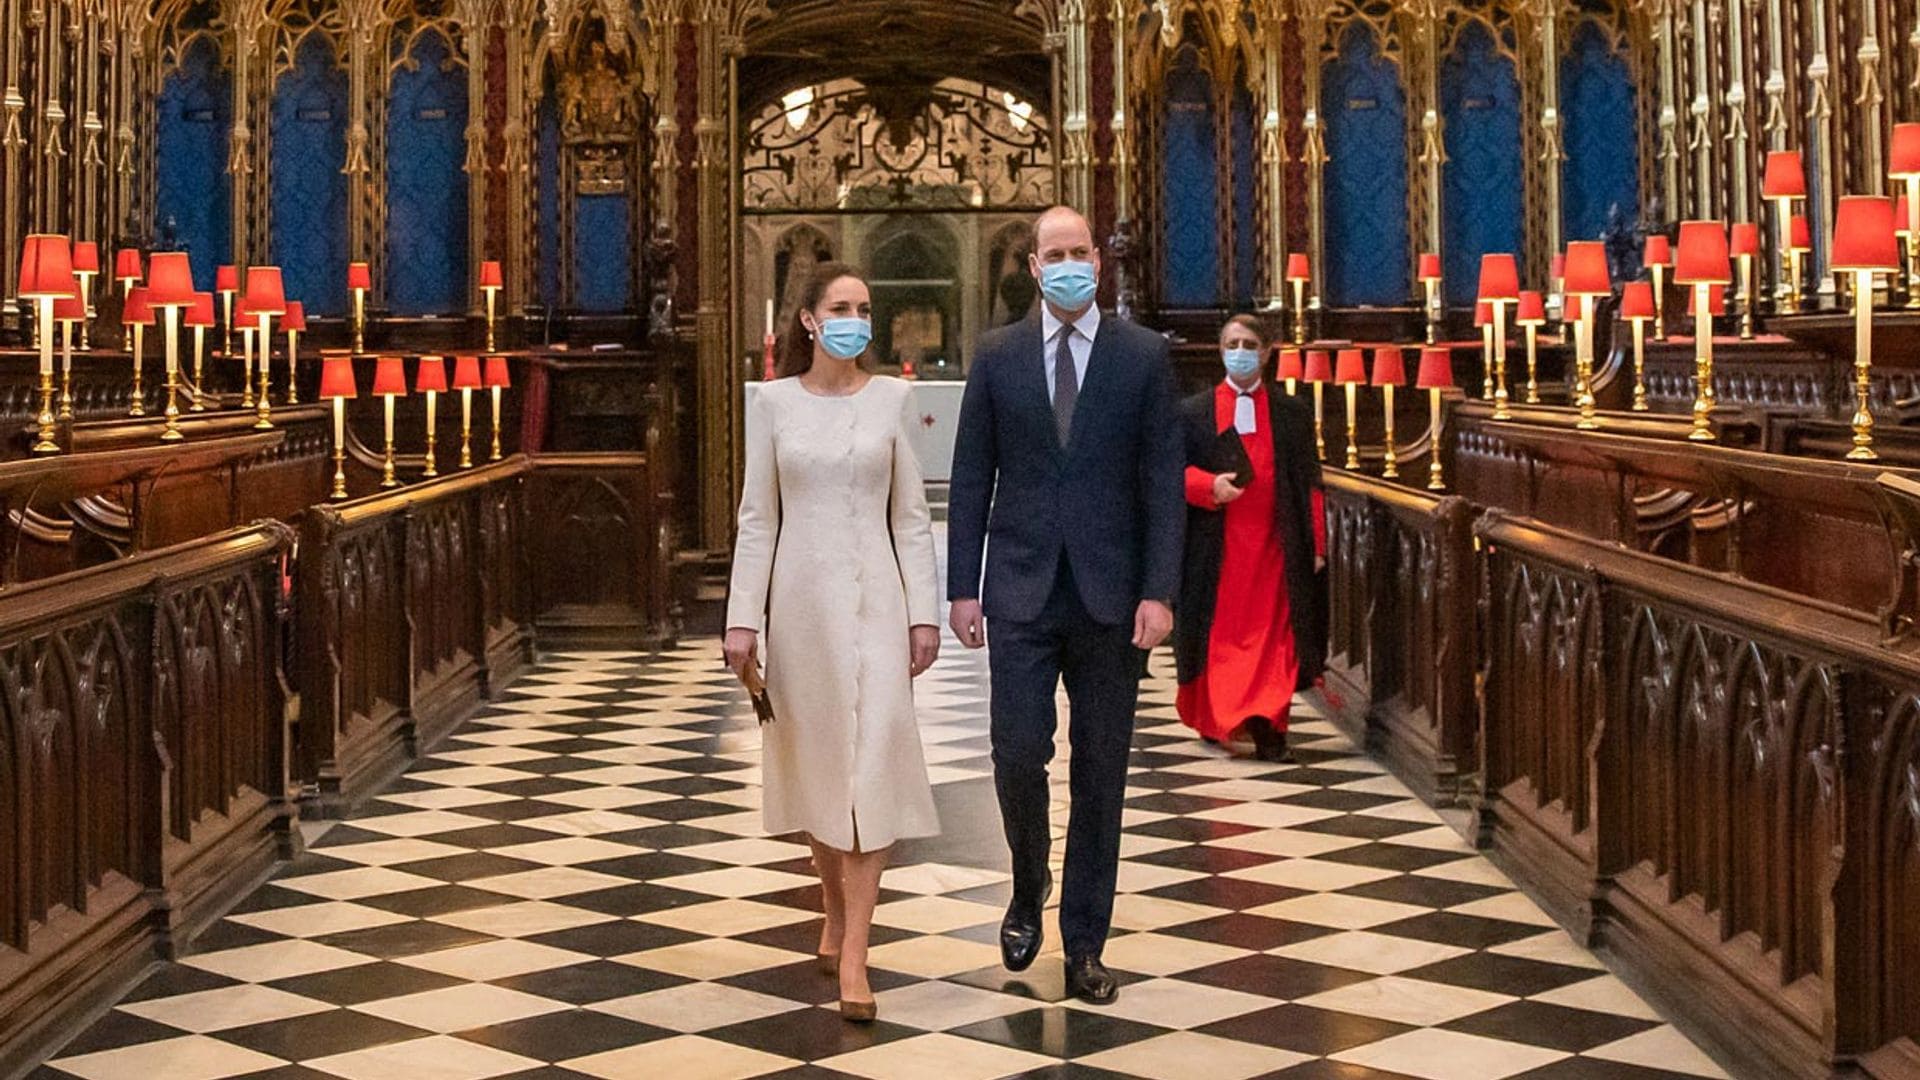 Kate se viste de blanco para volver a la Abadía de Westminster 10 años después de su boda